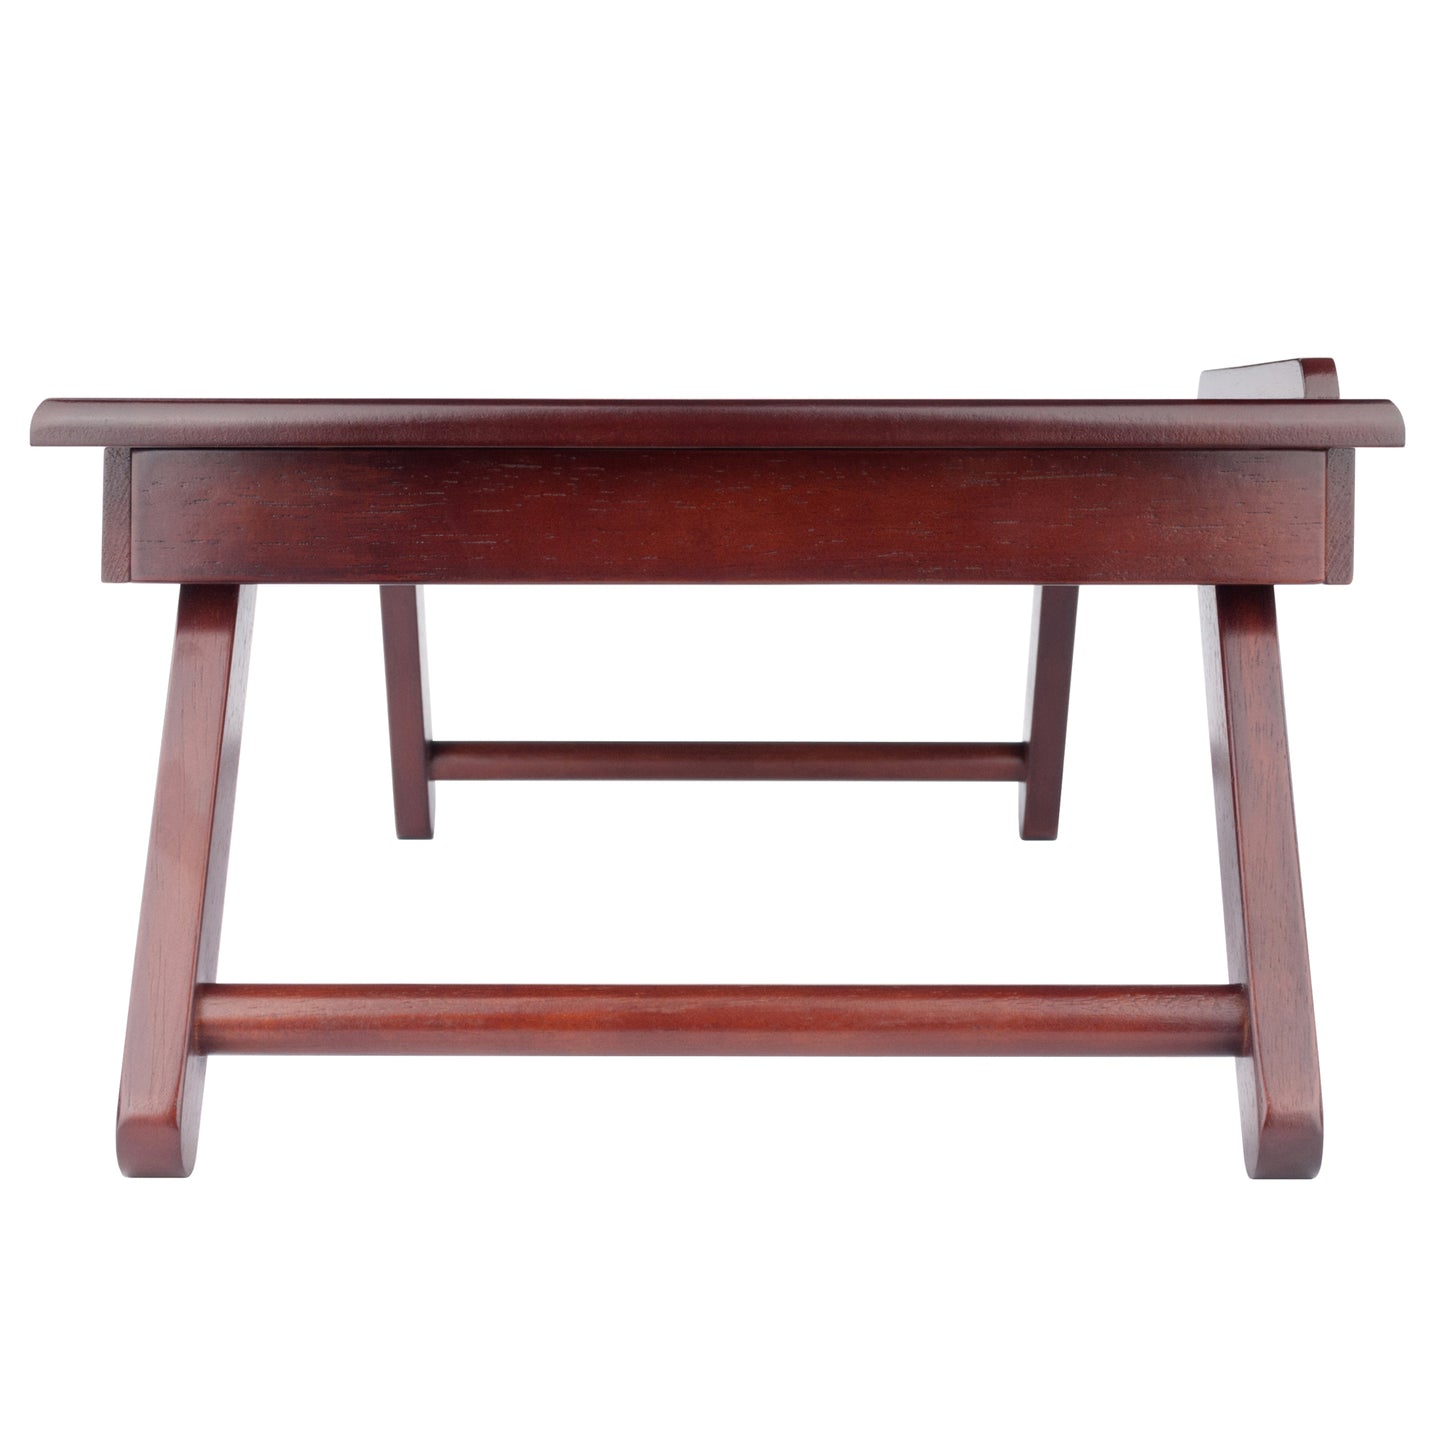 Alden Flip Top Desk, Tray with Drawer, Walnut